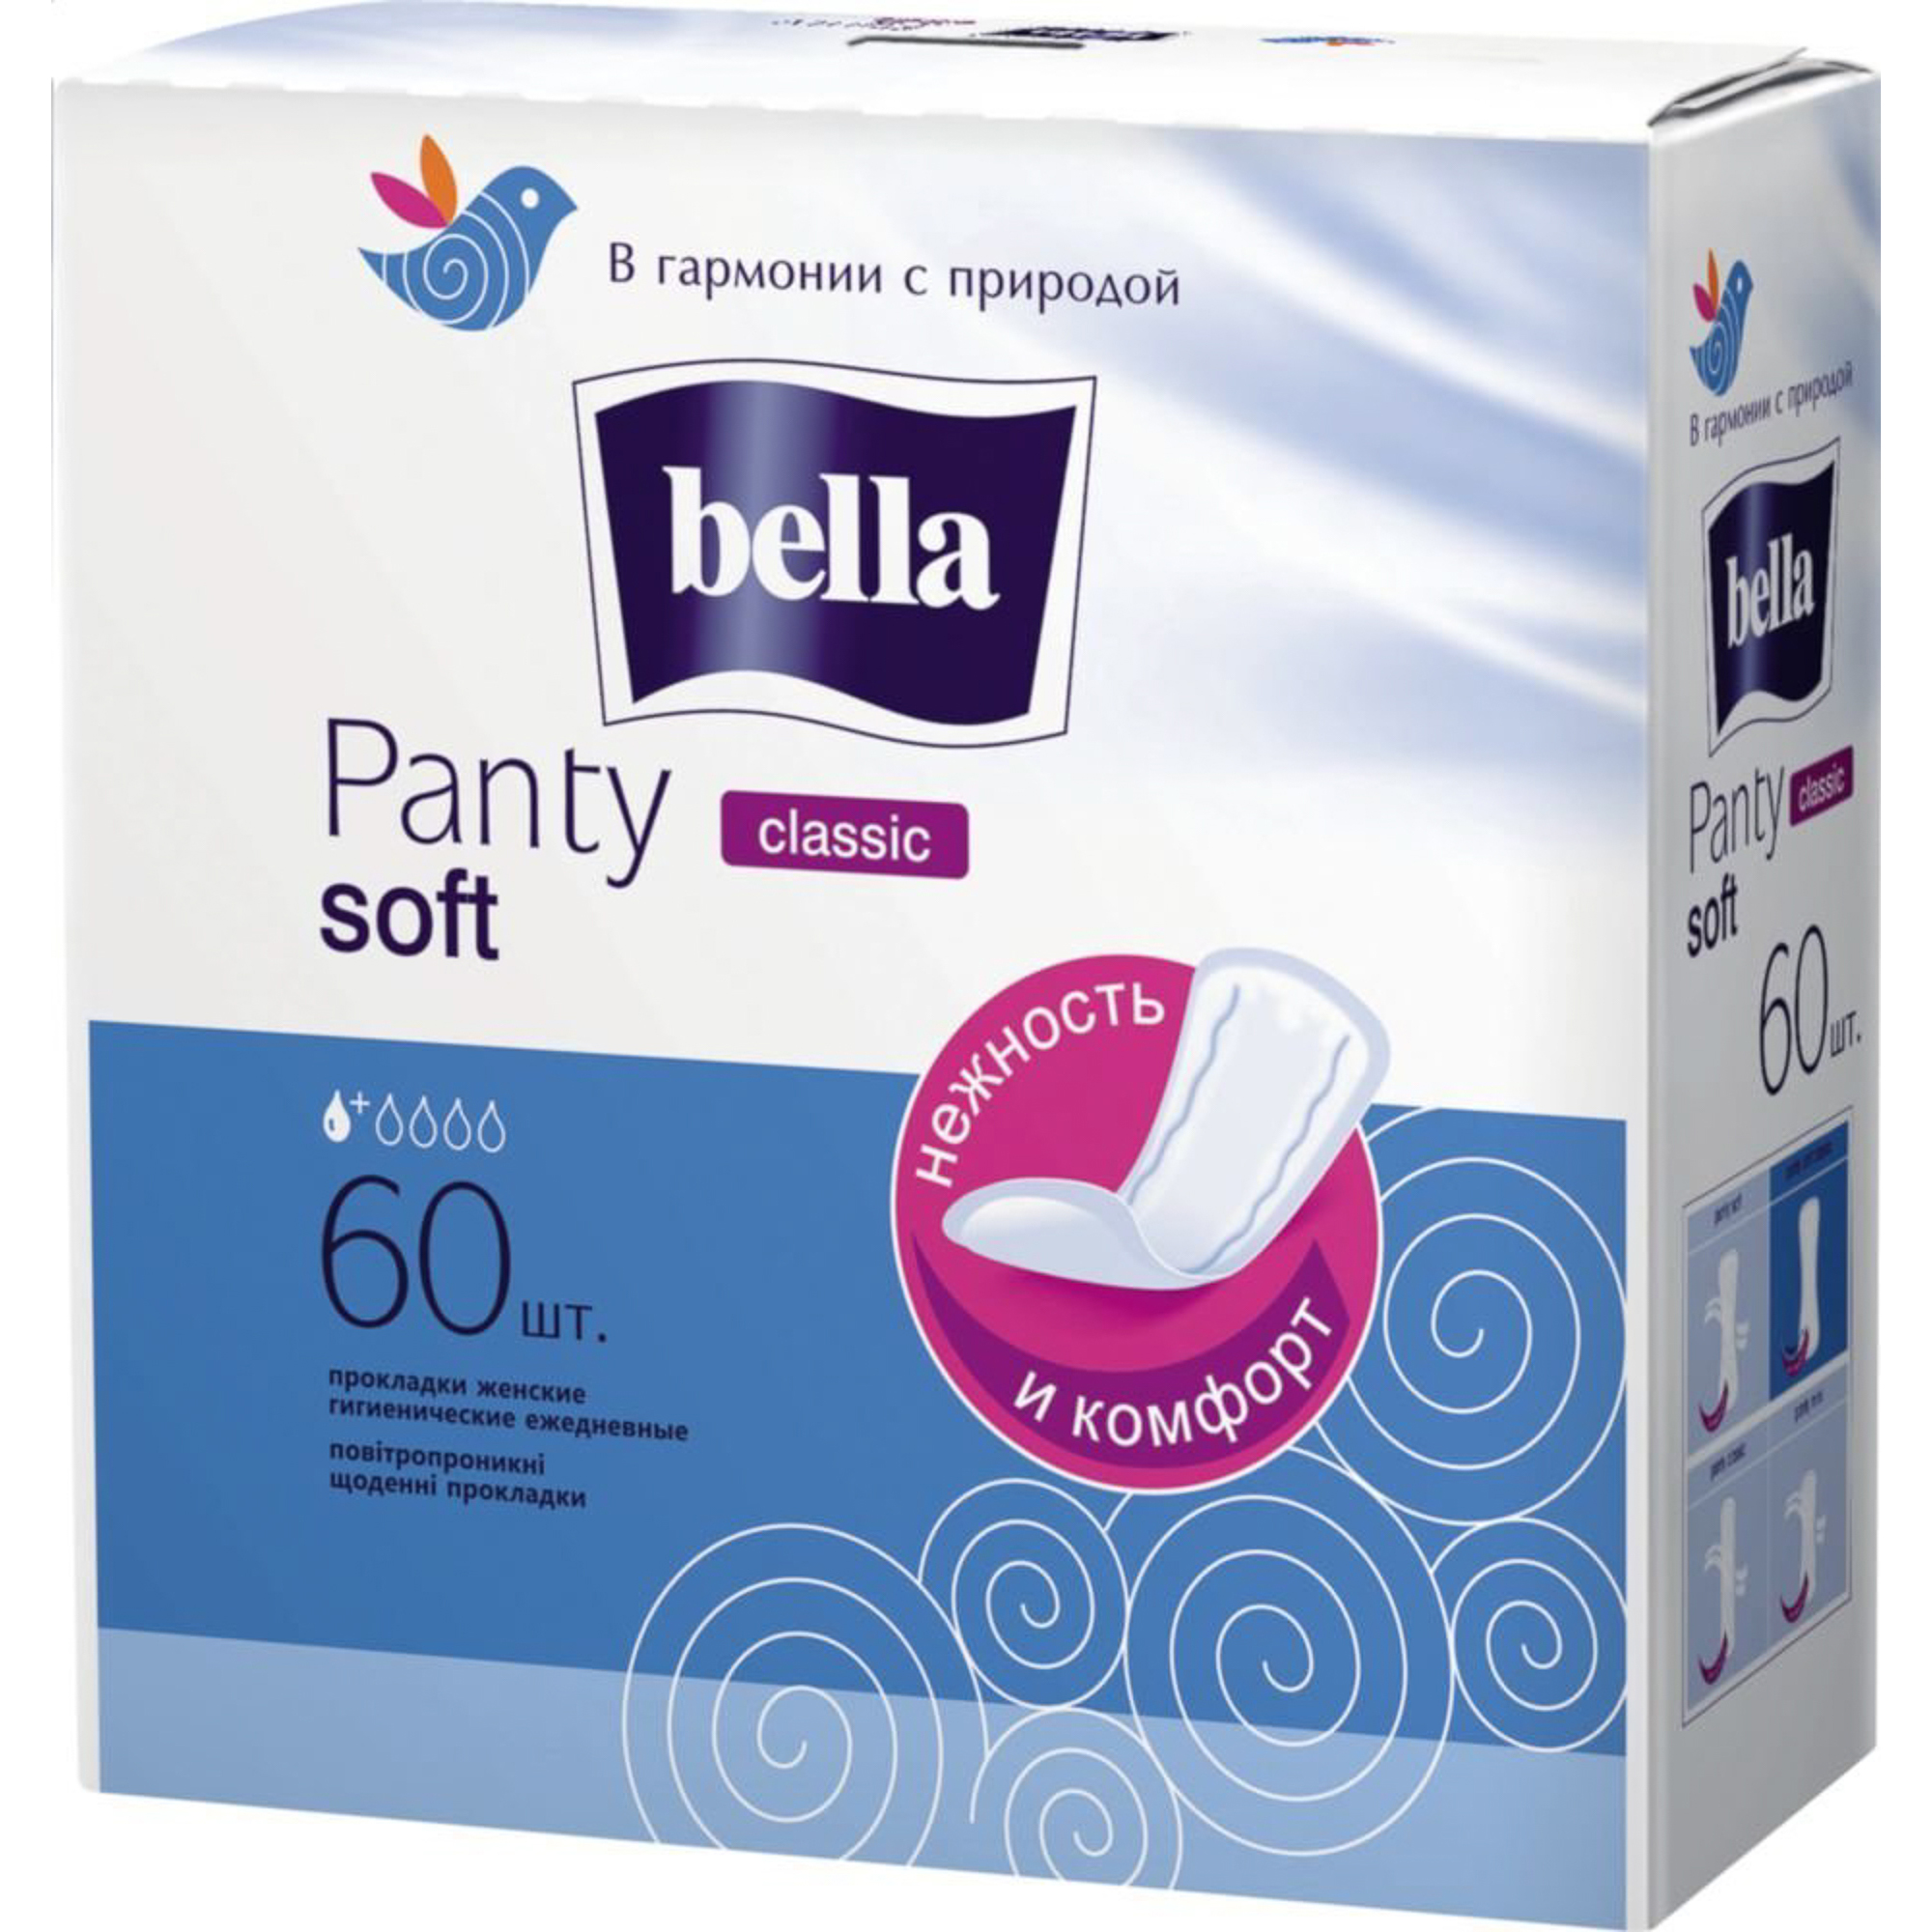 Прокладки Bella Panty Soft Classic 60 шт прокладки женские bella panty soft classic ежедневные 60 шт be 021 rn60 101